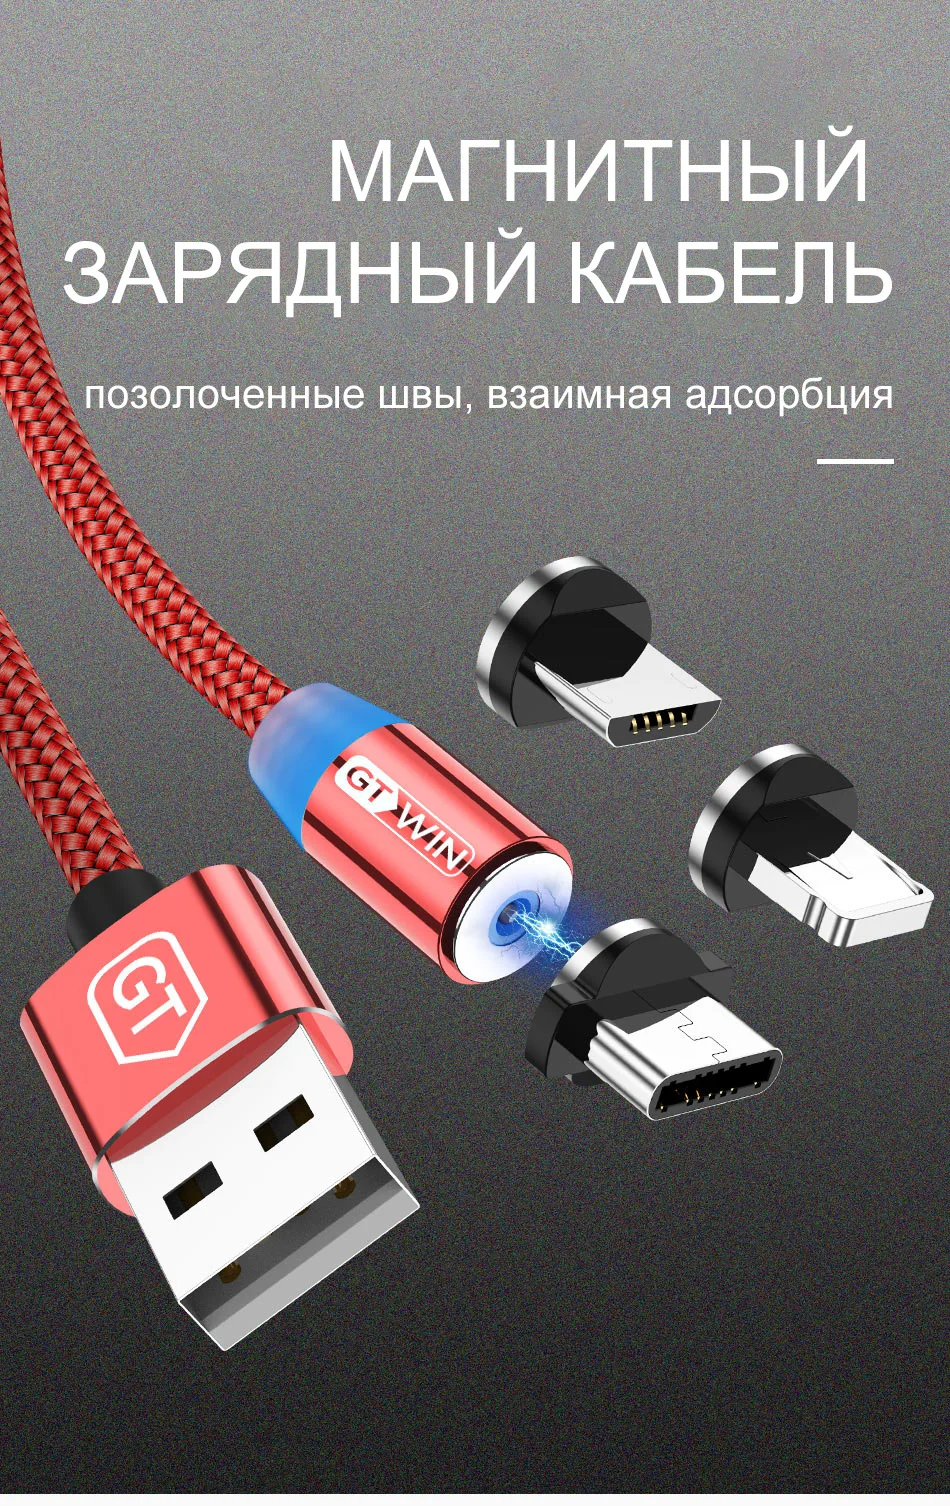 GTWIN 3M Магнитный кабель Micro USB Type C Кабель для быстрой зарядки Магнитное зарядное устройство Магнитный USB-кабель для зарядки для iPhone 11 pro max Xr X 8 7 6 плюс 6 s 5 s плюс iPad Samsung S9 S8 Note mi9 Xiaomi